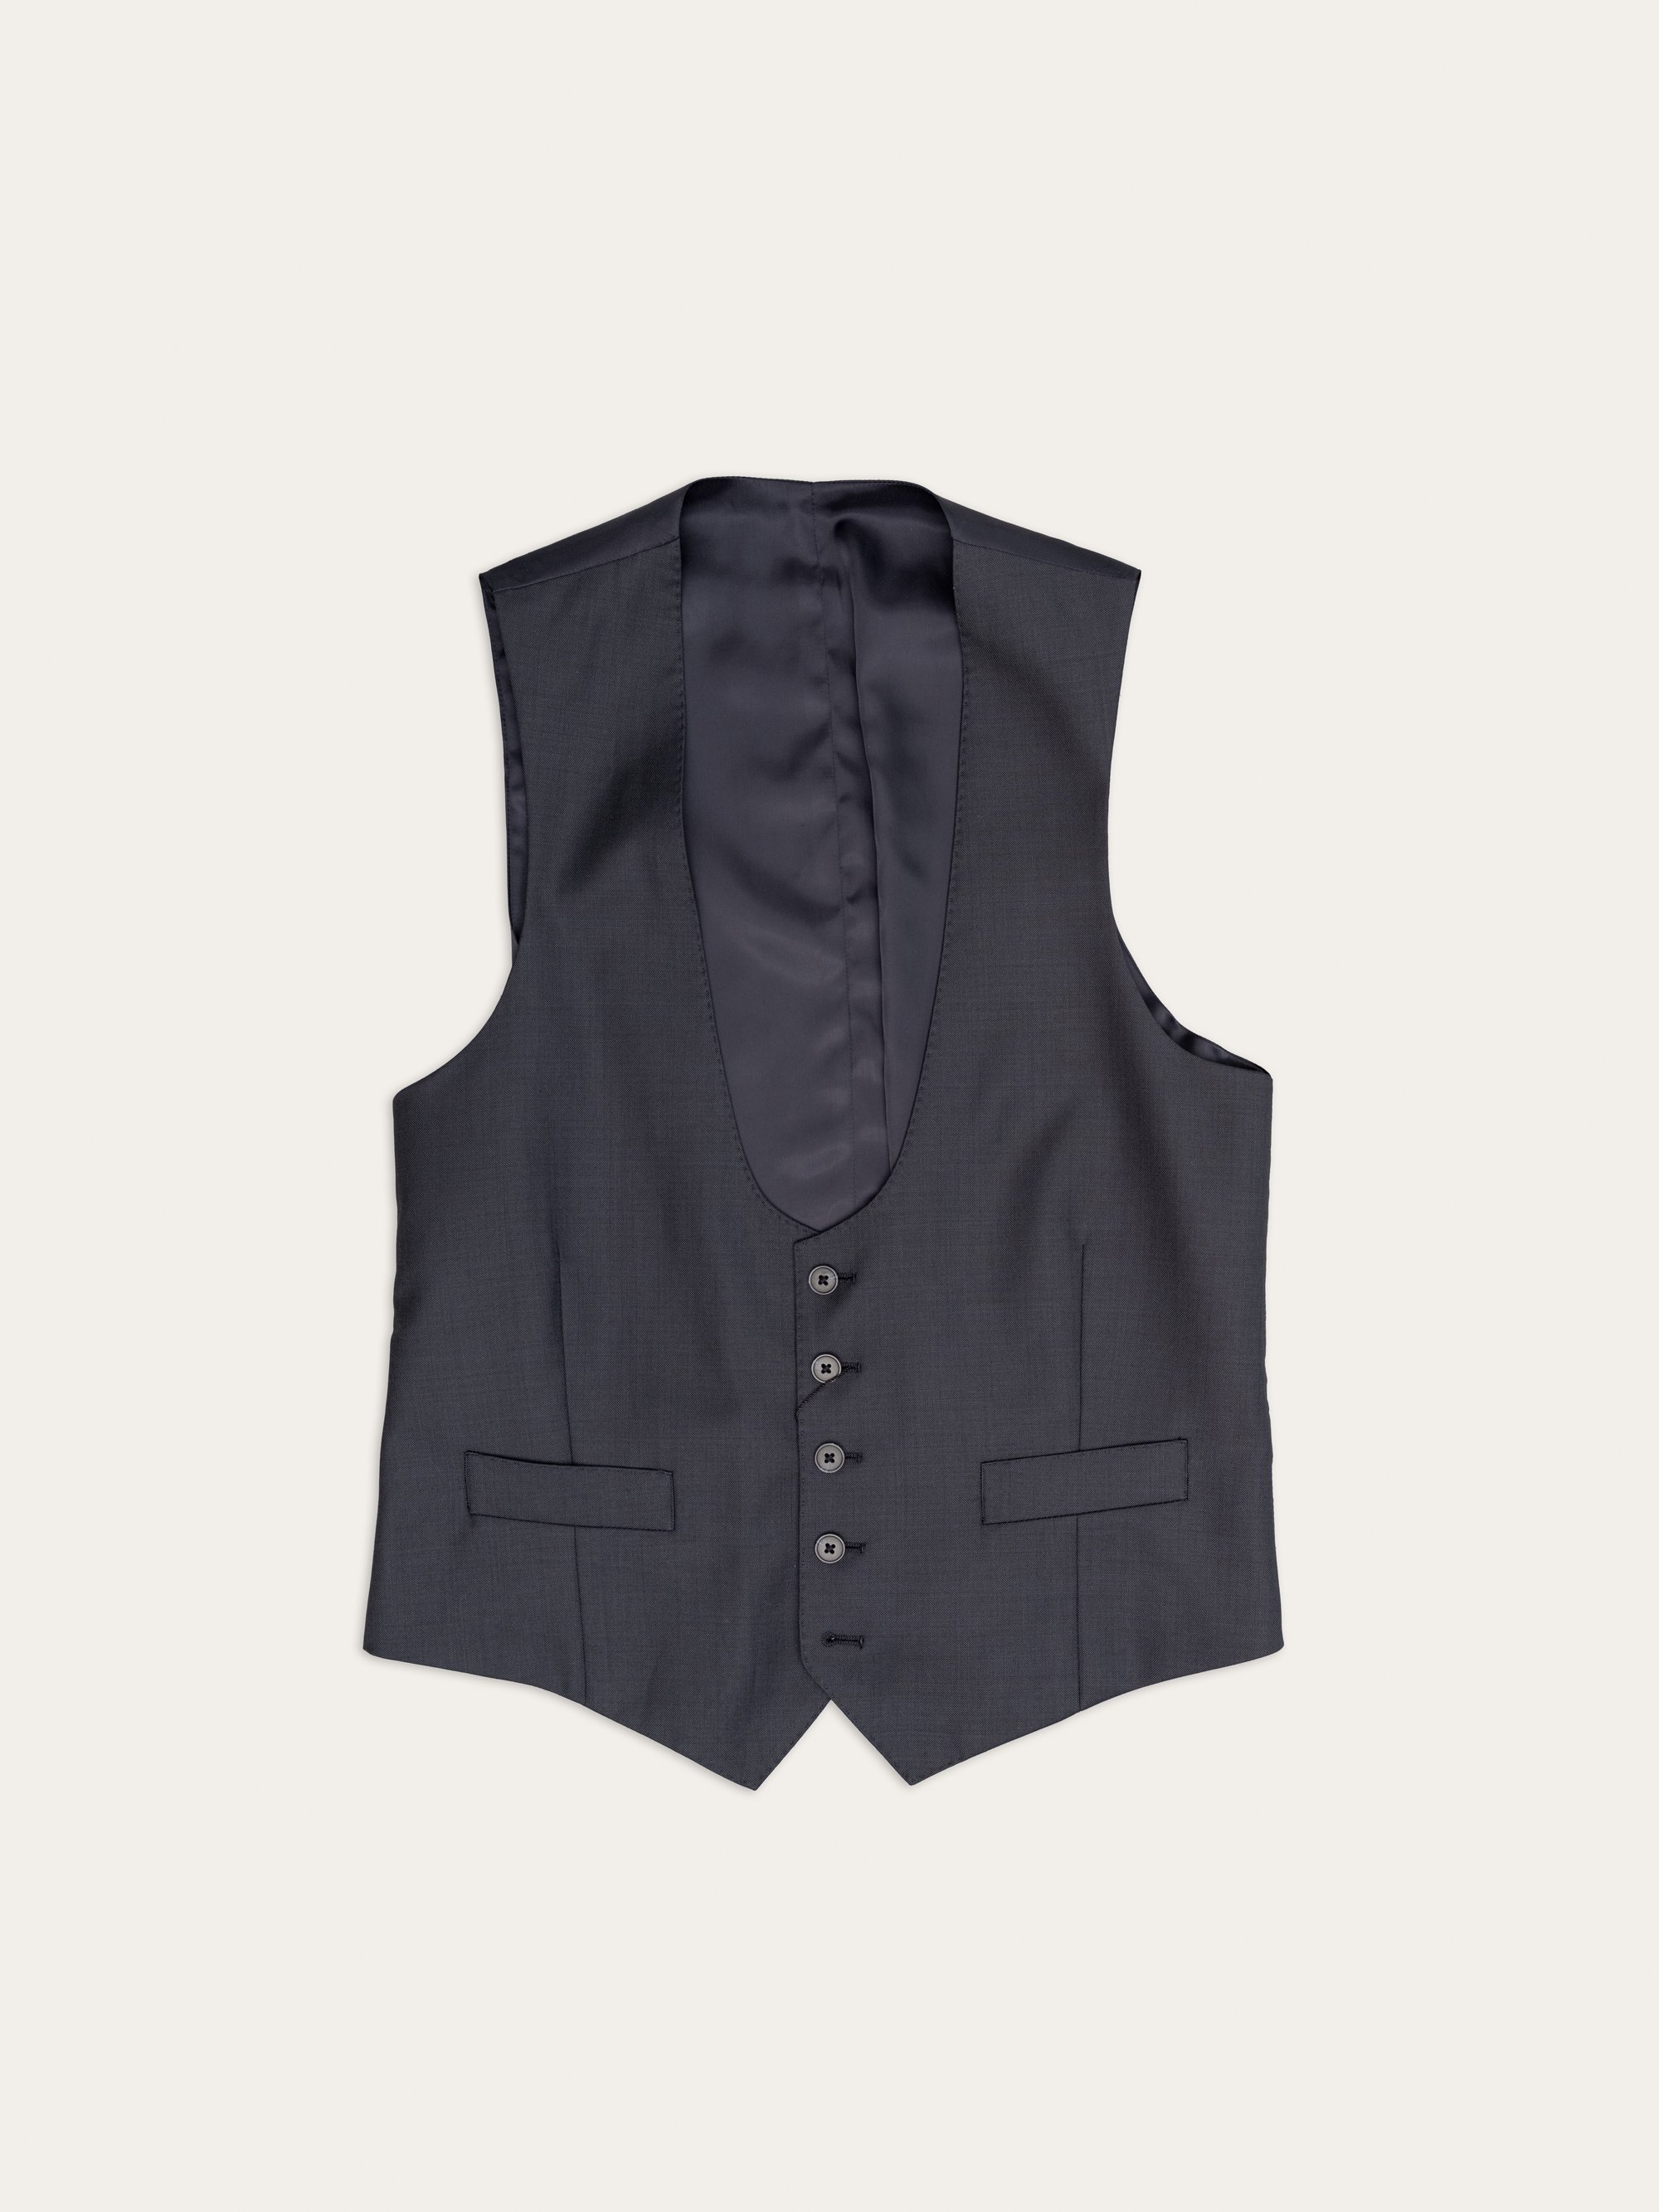 jerome clothiers - waistcoats - 9.jpg